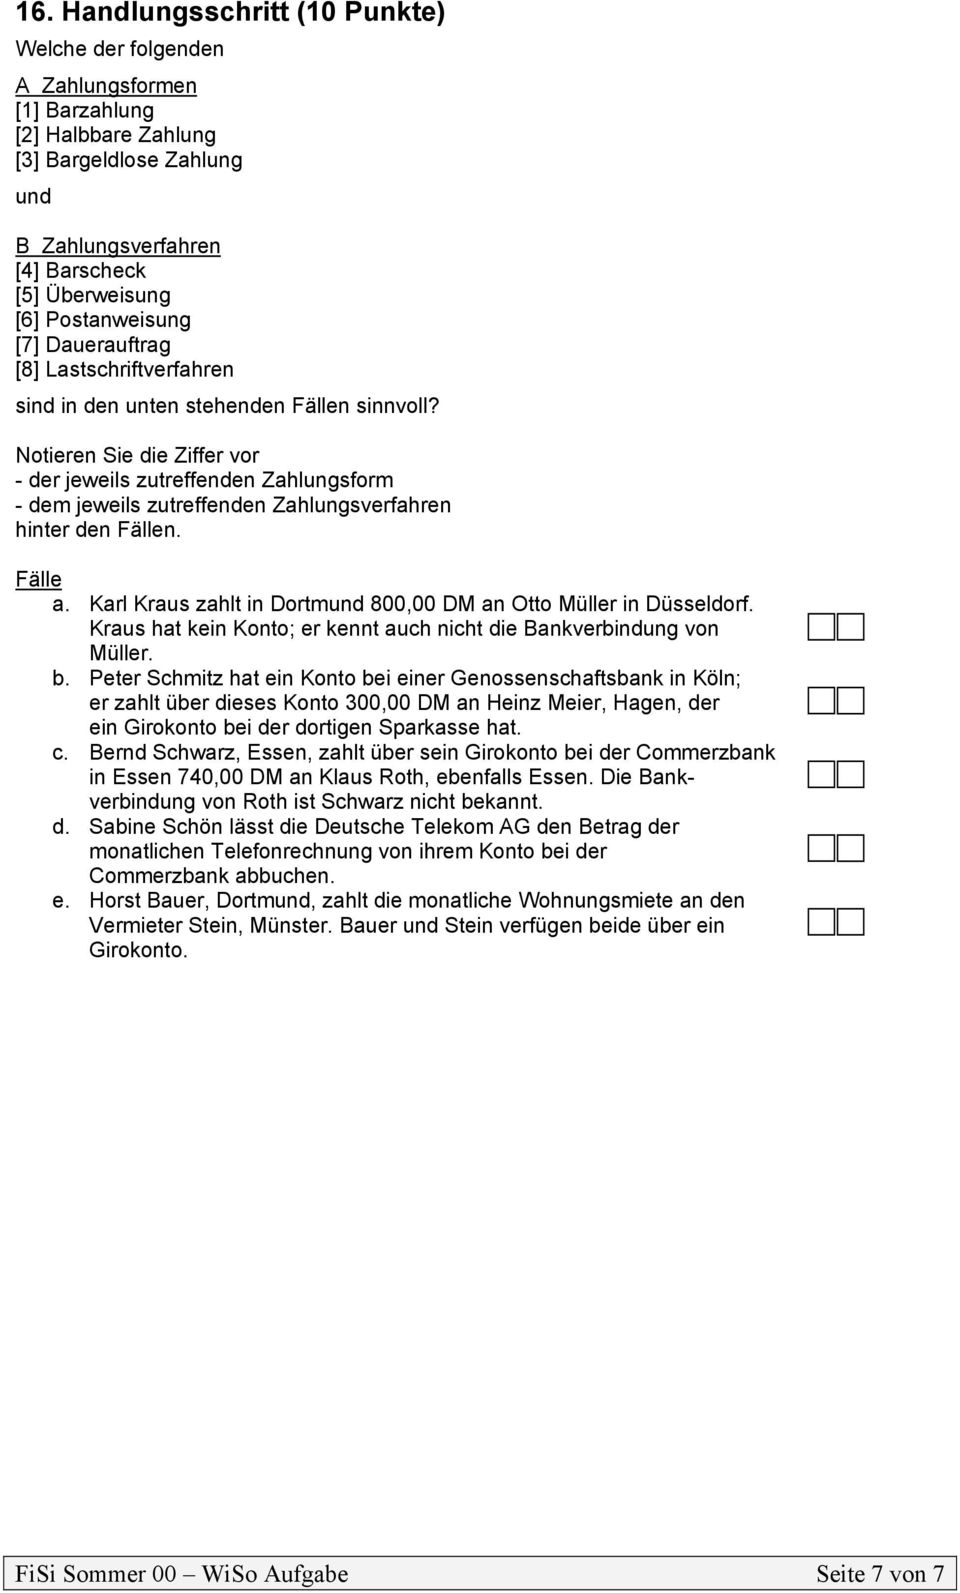 Notieren Sie die Ziffer vor - der jeweils zutreffenden Zahlungsform - dem jeweils zutreffenden Zahlungsverfahren hinter den n. a. Karl Kraus zahlt in Dortmund 800,00 DM an Otto Müller in Düsseldorf.